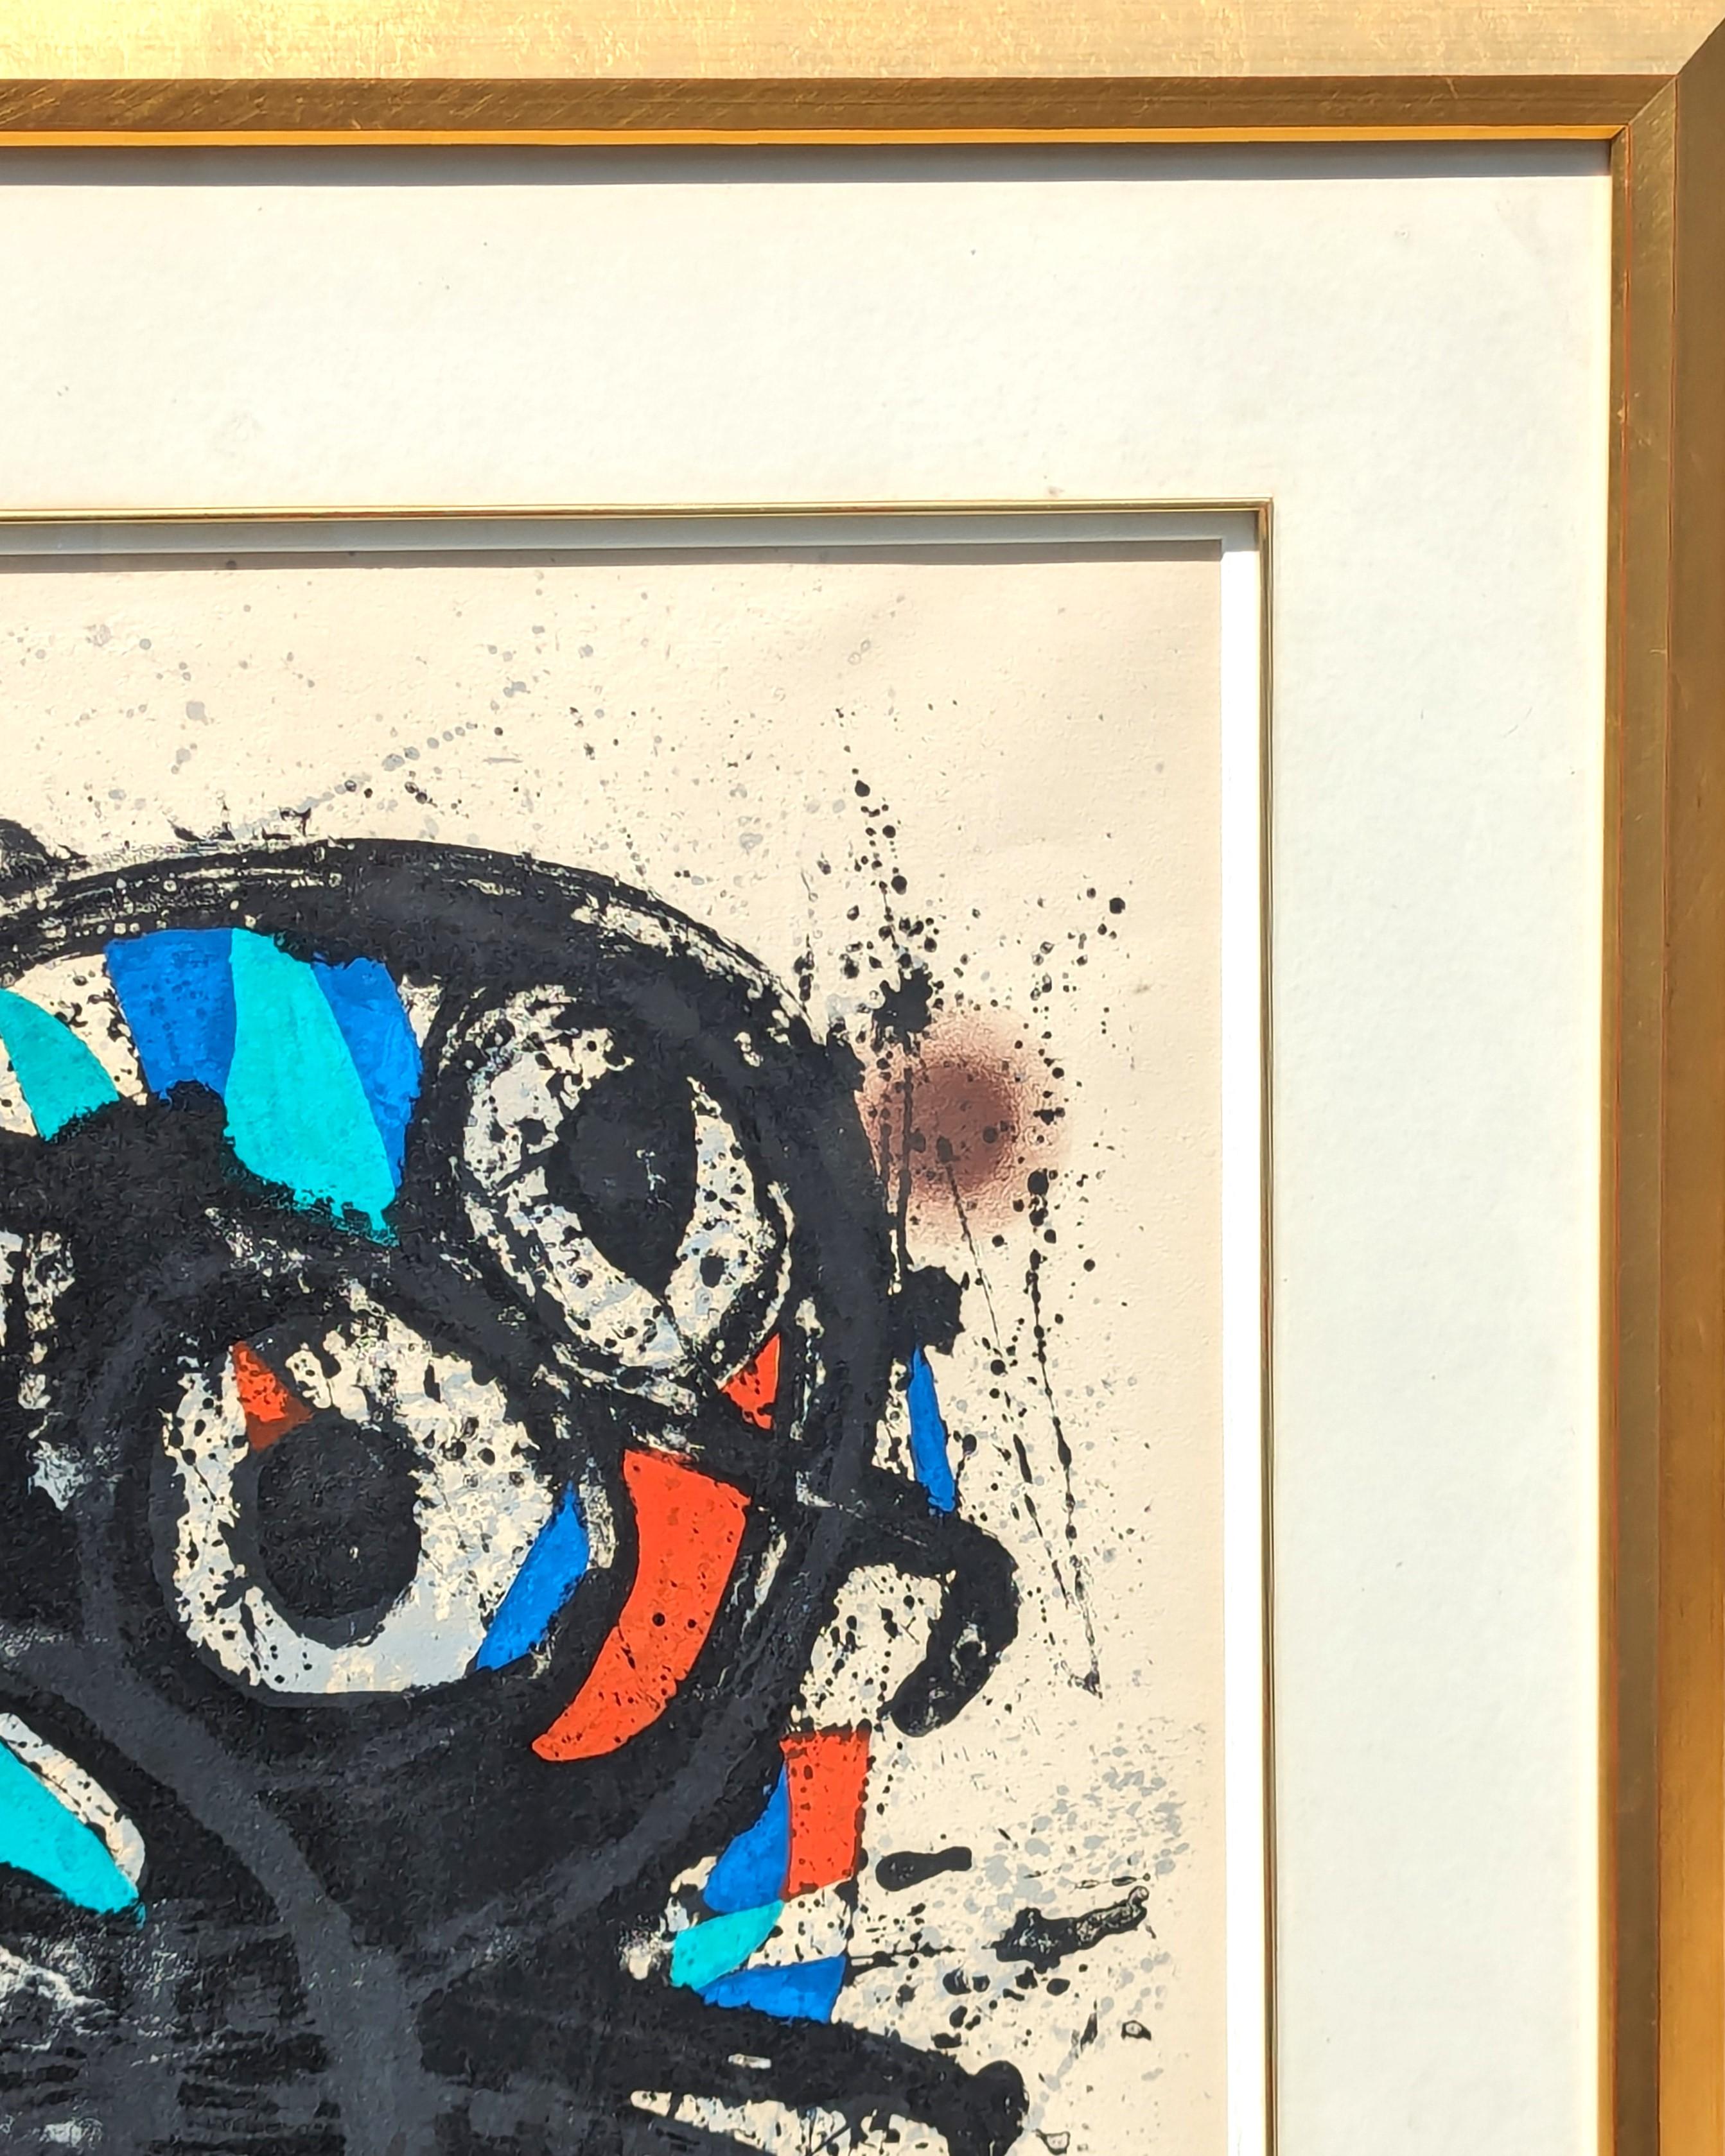 Moderne farbenfrohe abstrakte Lithographie des berühmten surrealistischen Künstlers Joan Miro. Das Werk entstand im Zusammenhang mit einer Ausstellung, die er 1974 im Grand Palais in Paris, Frankreich, hatte. Am vorderen unteren Rand mit Bleistift